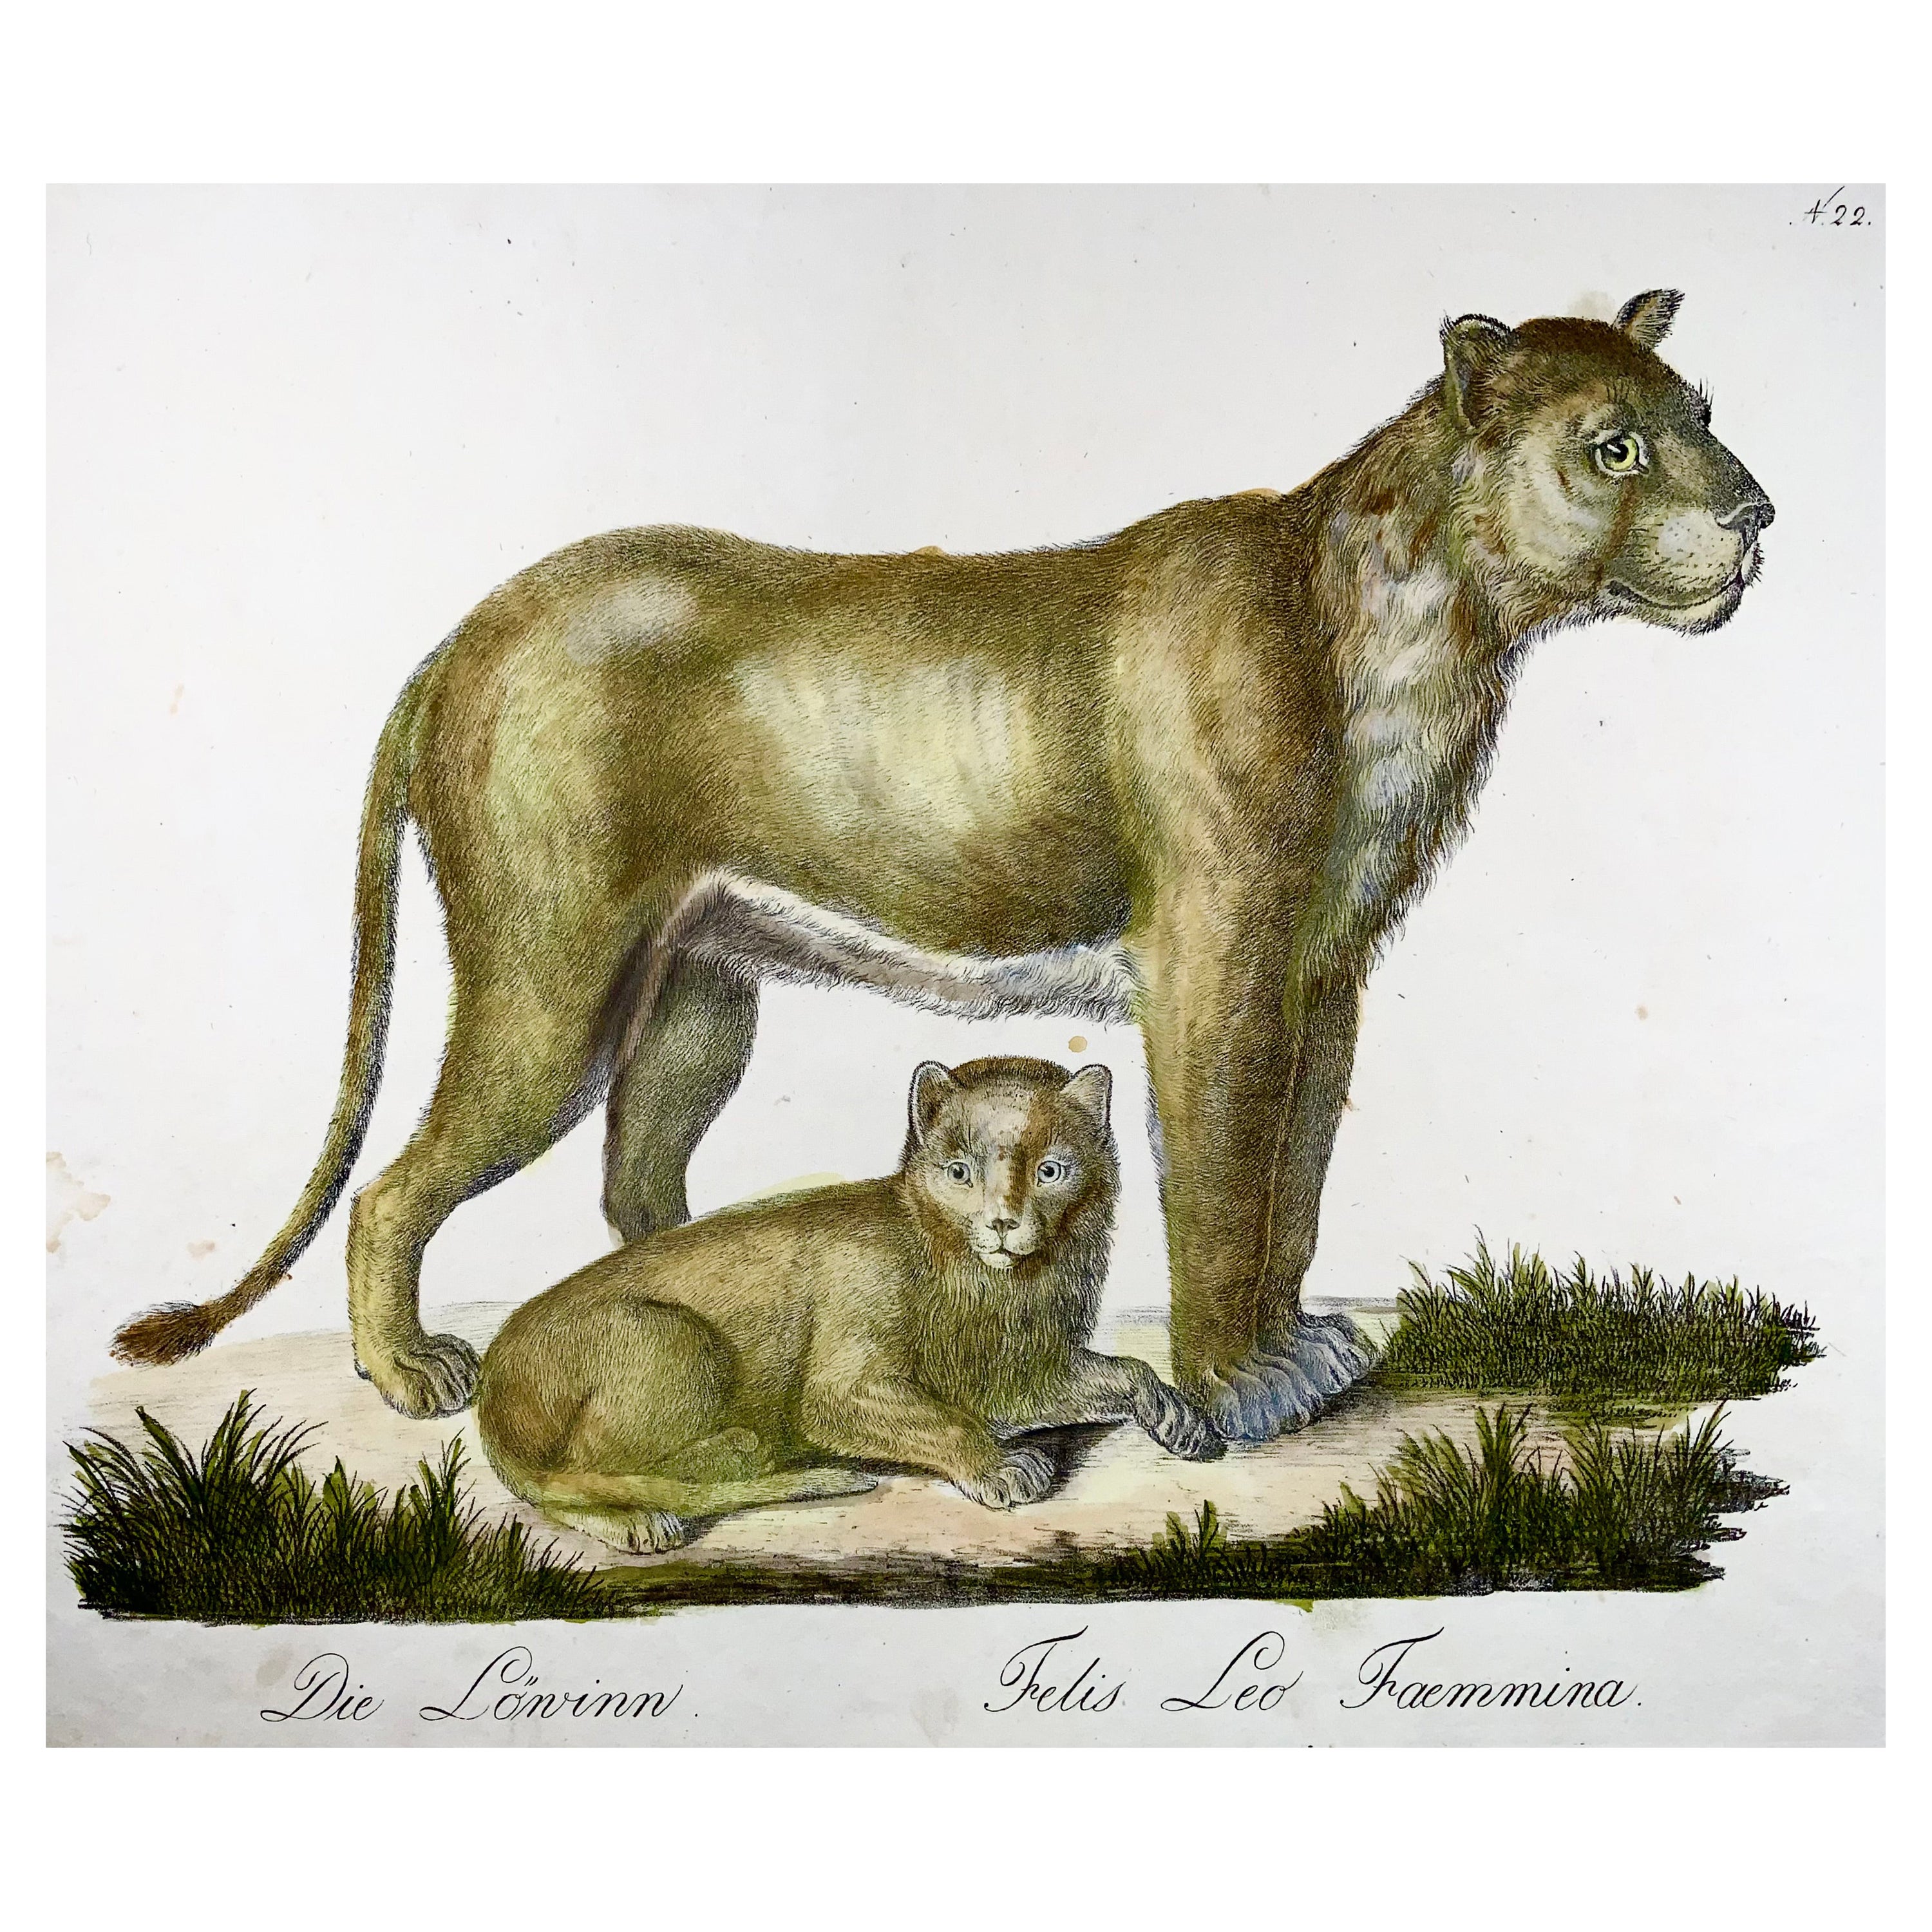 1816 Lioness, Brodtmann, Imp. folio 42,5 cm, incunabulaire de la lithographie